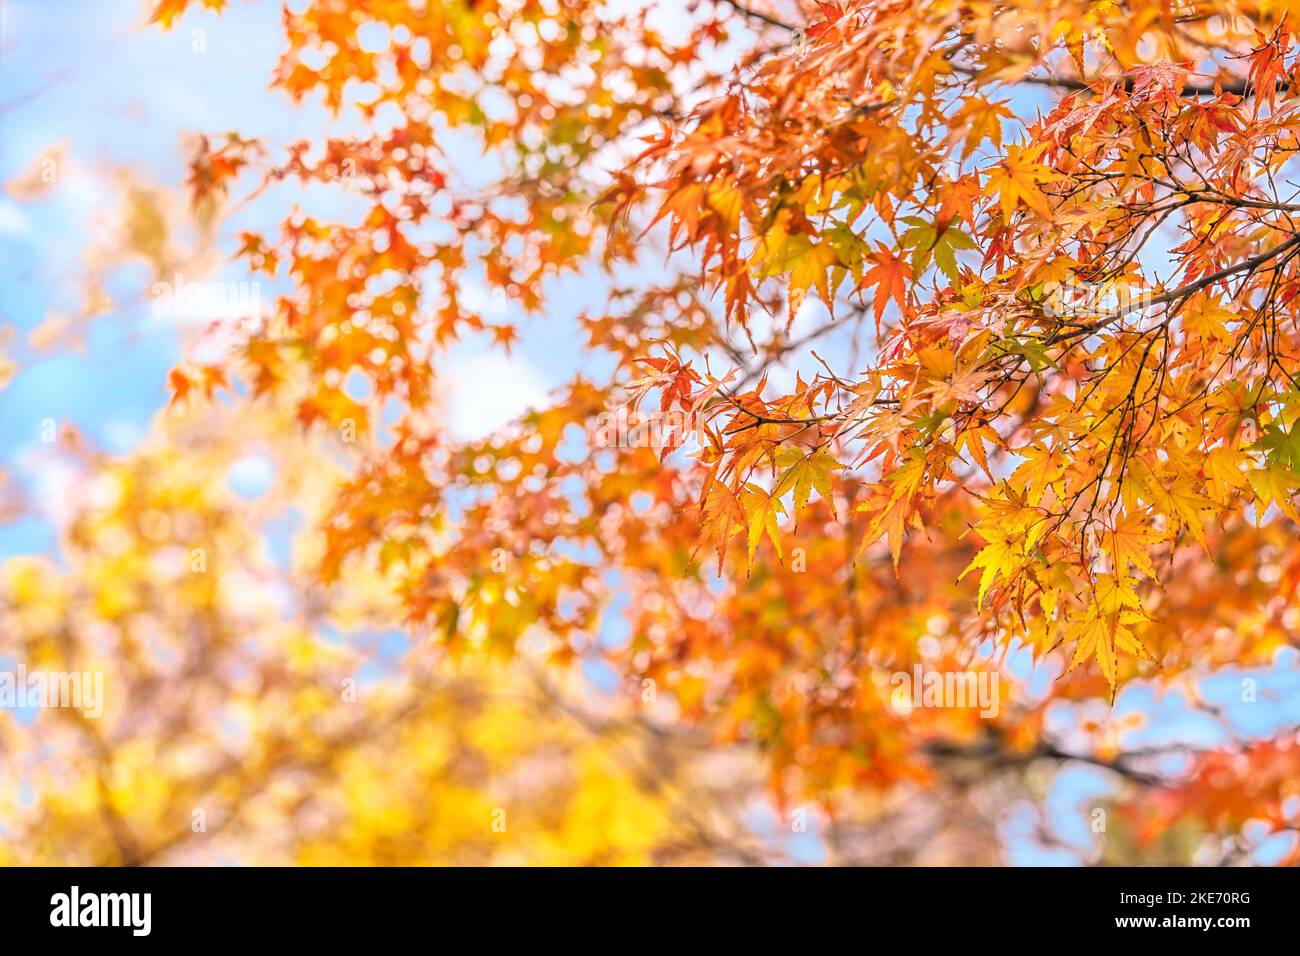 Zweige japanischer Ahorn-Momiji-Blätter, die während der Herbstsaison mit gelben, orangen und roten Farbabstufungen gegen einen natürlich unscharfen Rücken gefärbt sind Stockfoto